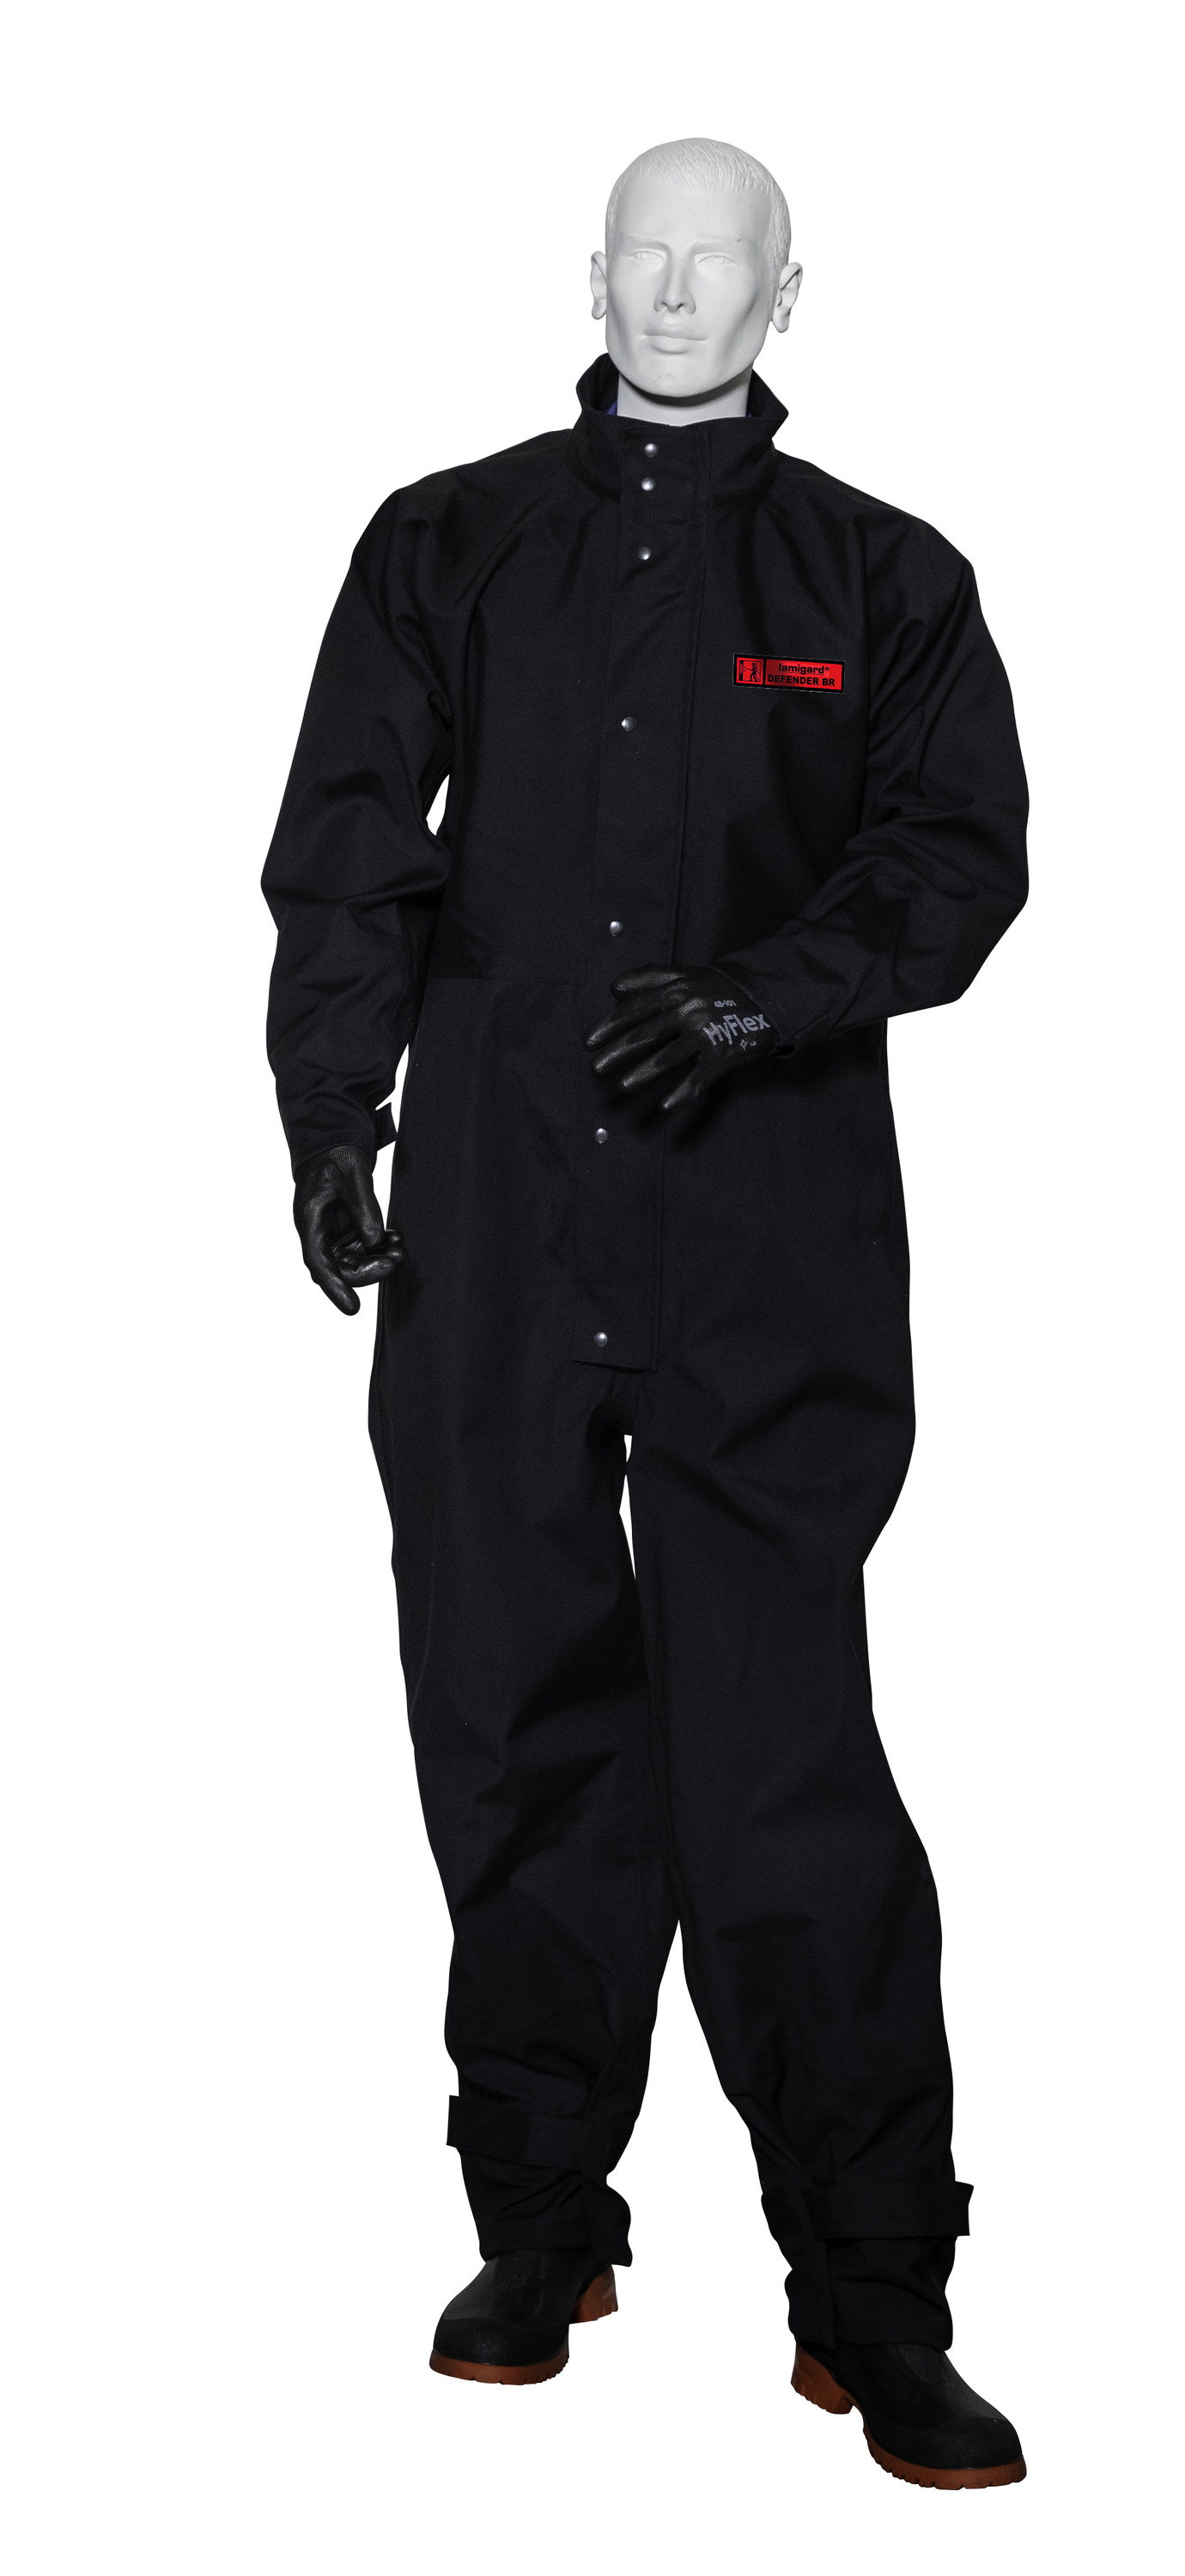 Strahlerschutzanzug Defender BR, Farbe schwarz, Größe mittel / groß (175-185 cm)